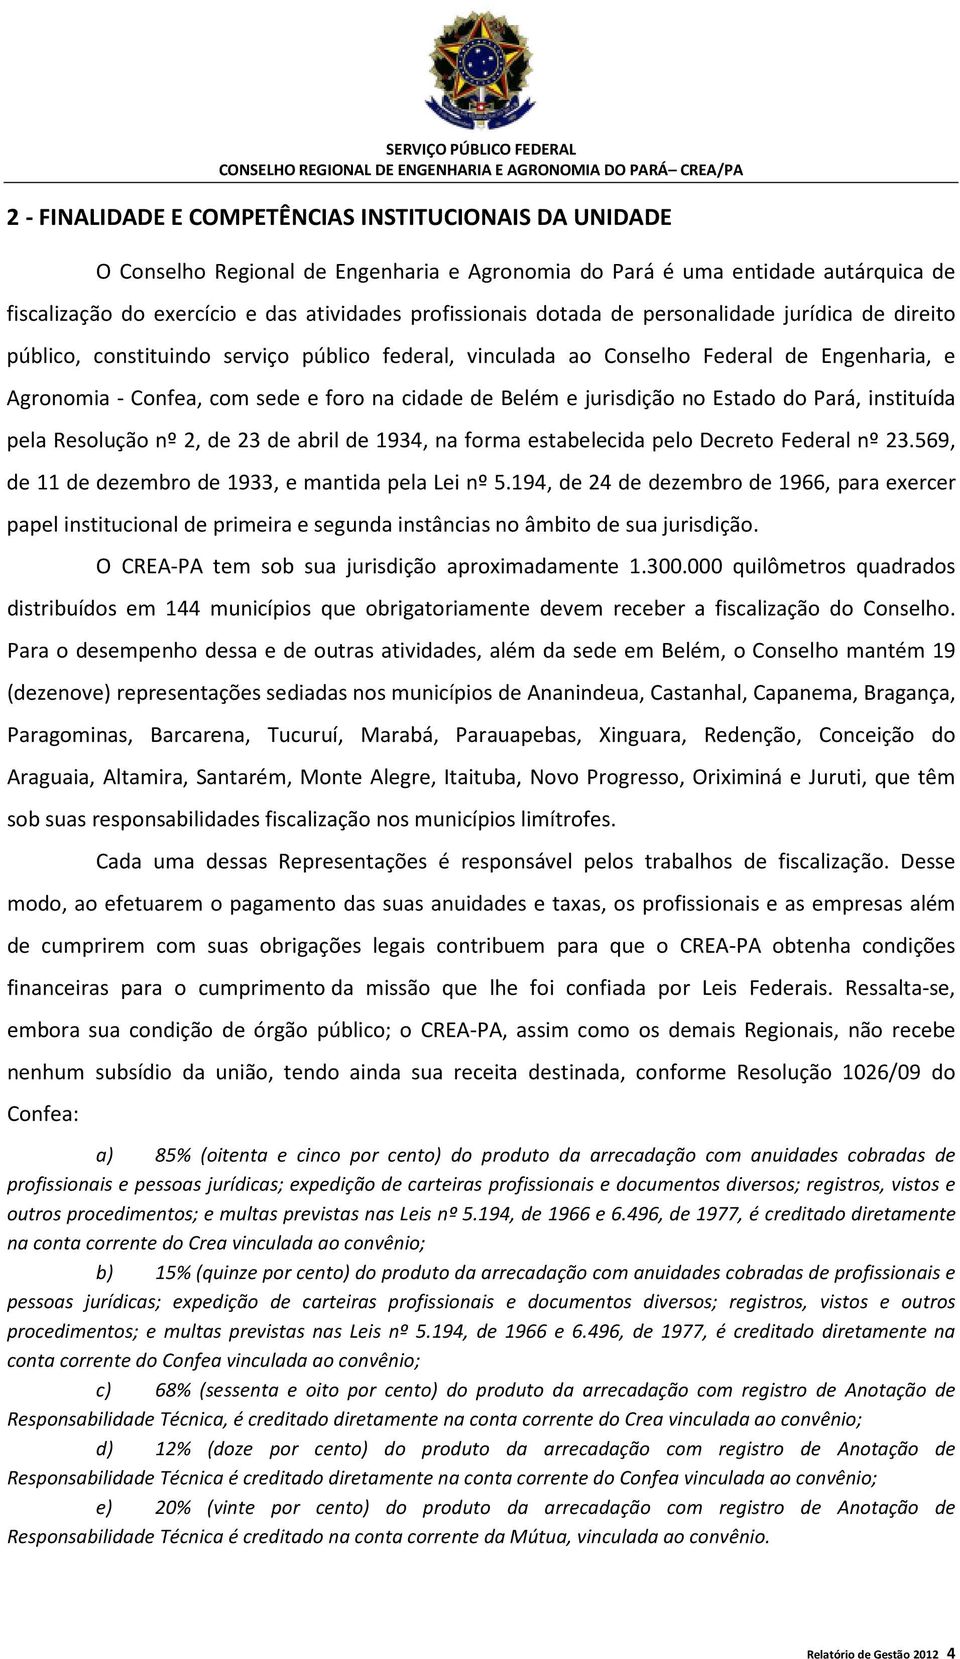 jurisdição no Estado do Pará, instituída pela Resolução nº 2, de 23 de abril de 1934, na forma estabelecida pelo Decreto Federal nº 23.569, de 11 de dezembro de 1933, e mantida pela Lei nº 5.